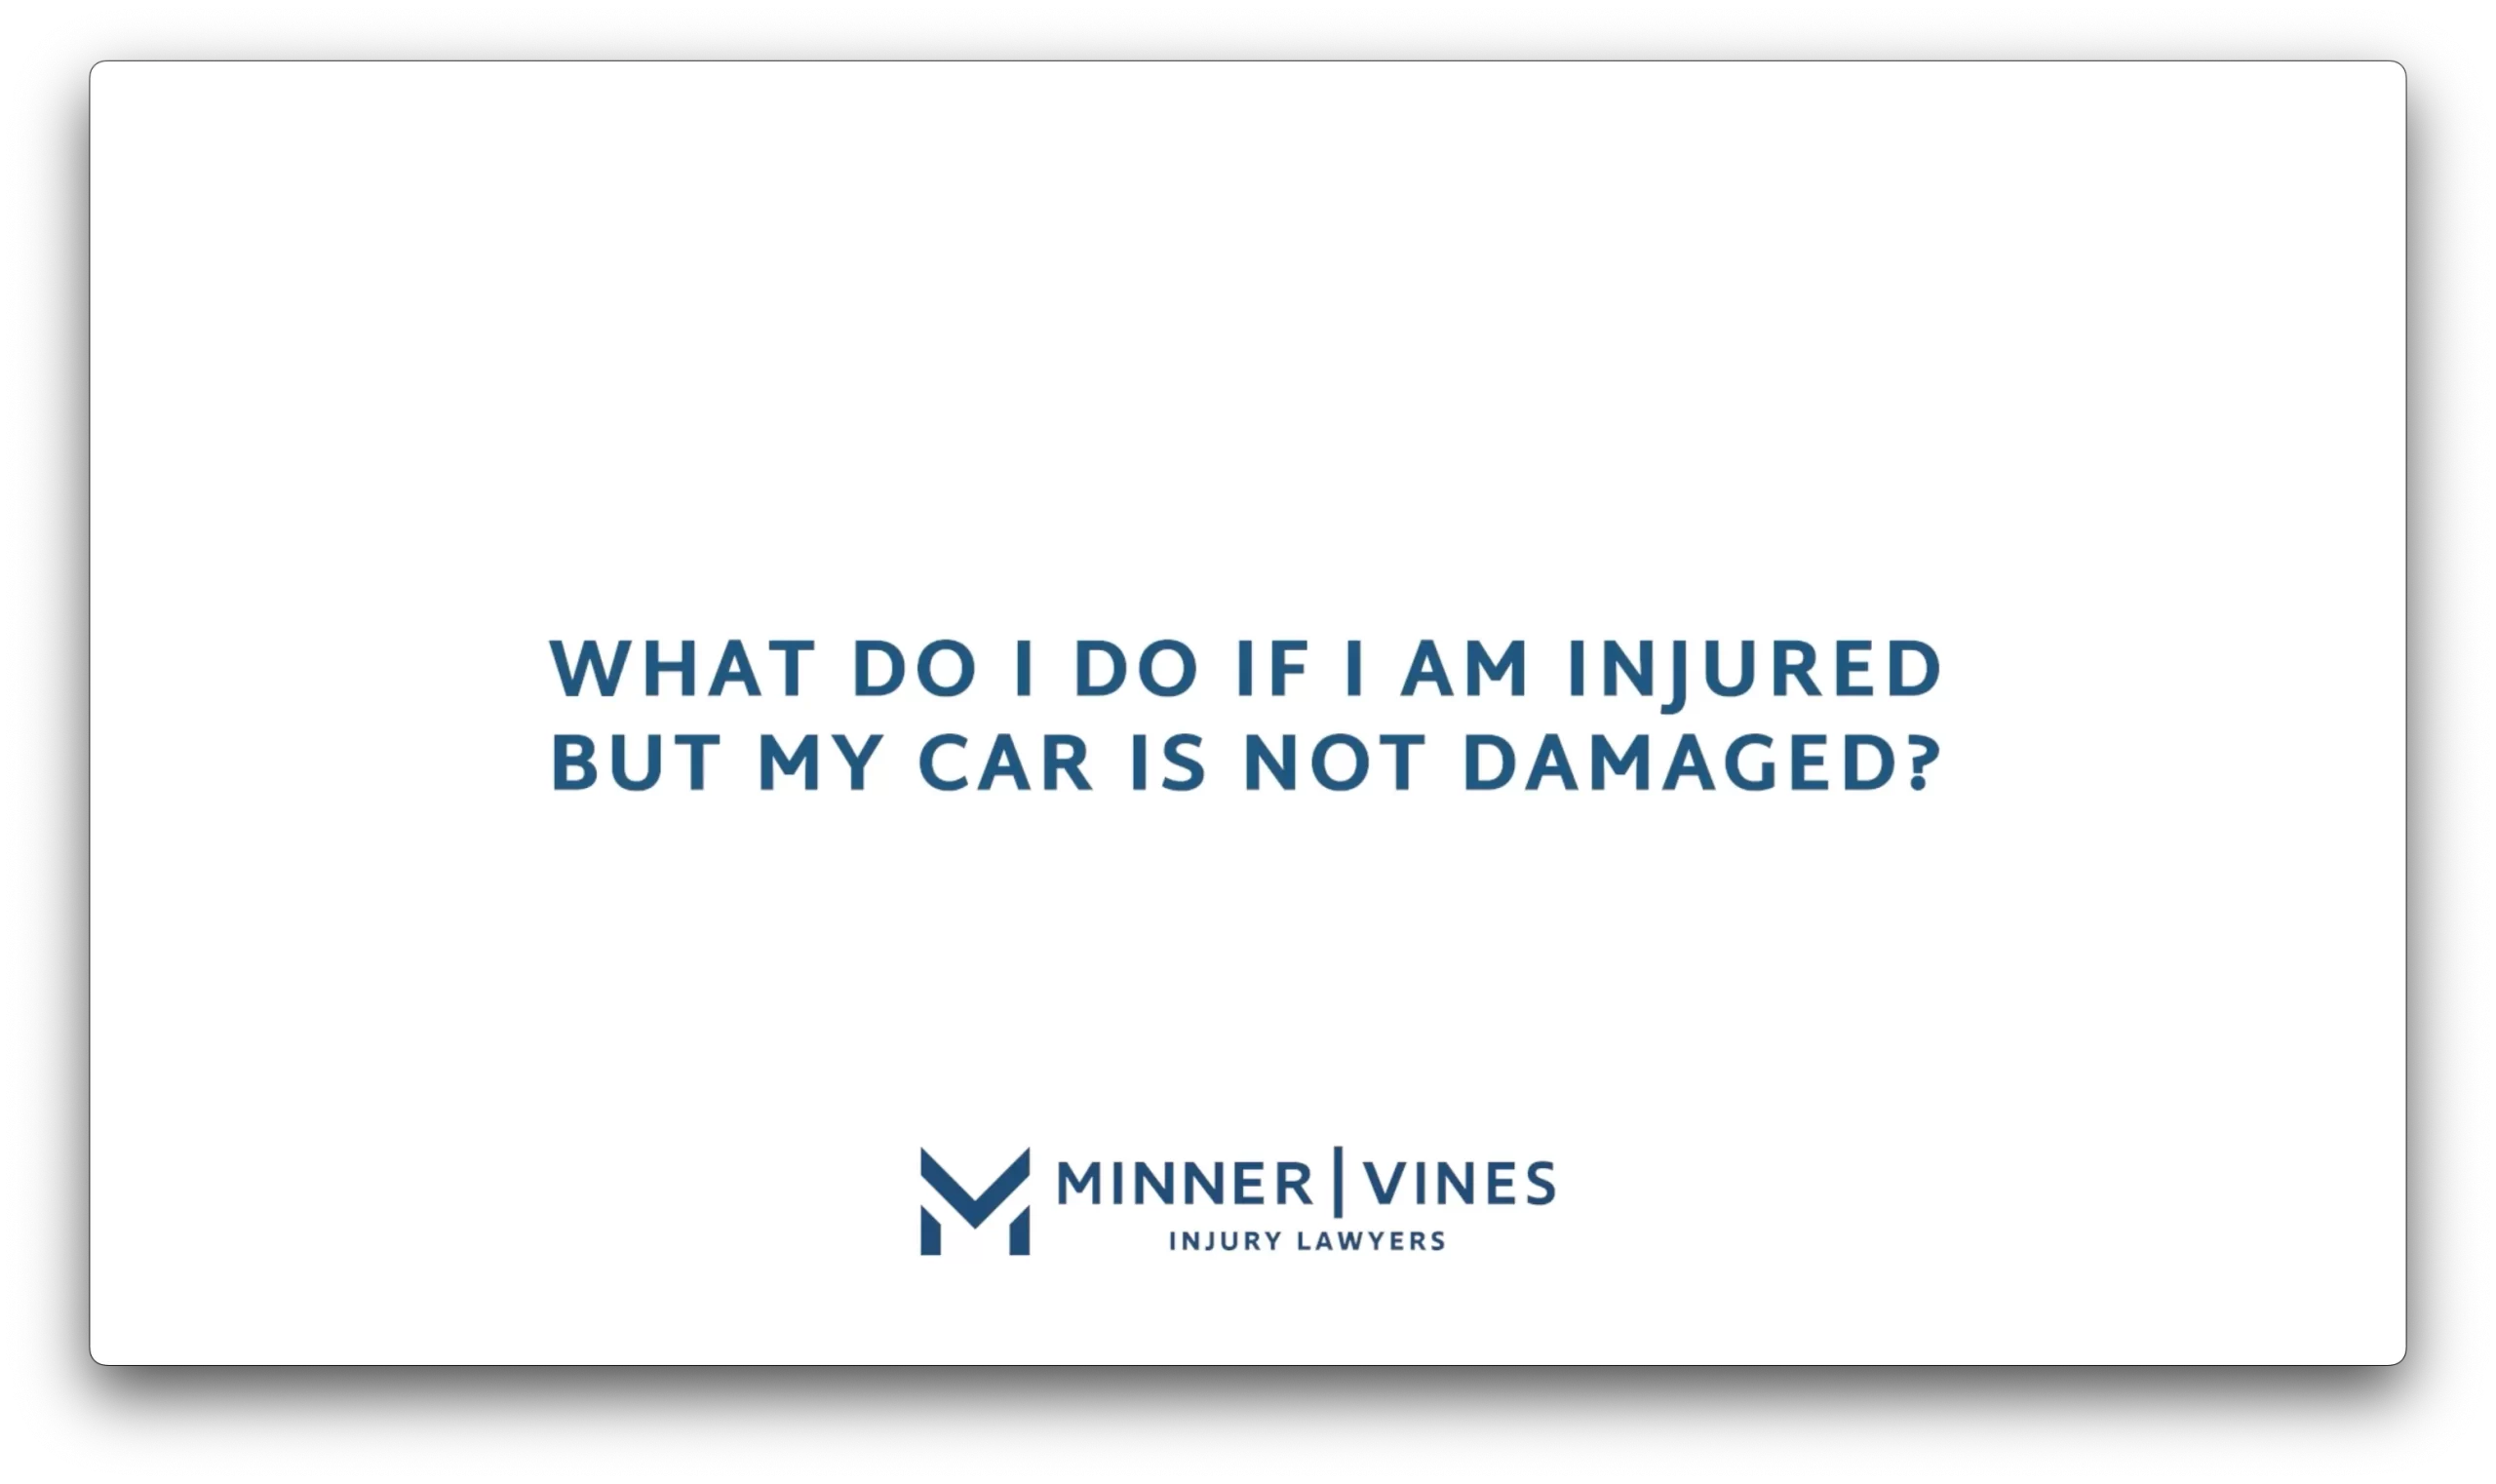 What do I do if I am injured but my car is not damaged?